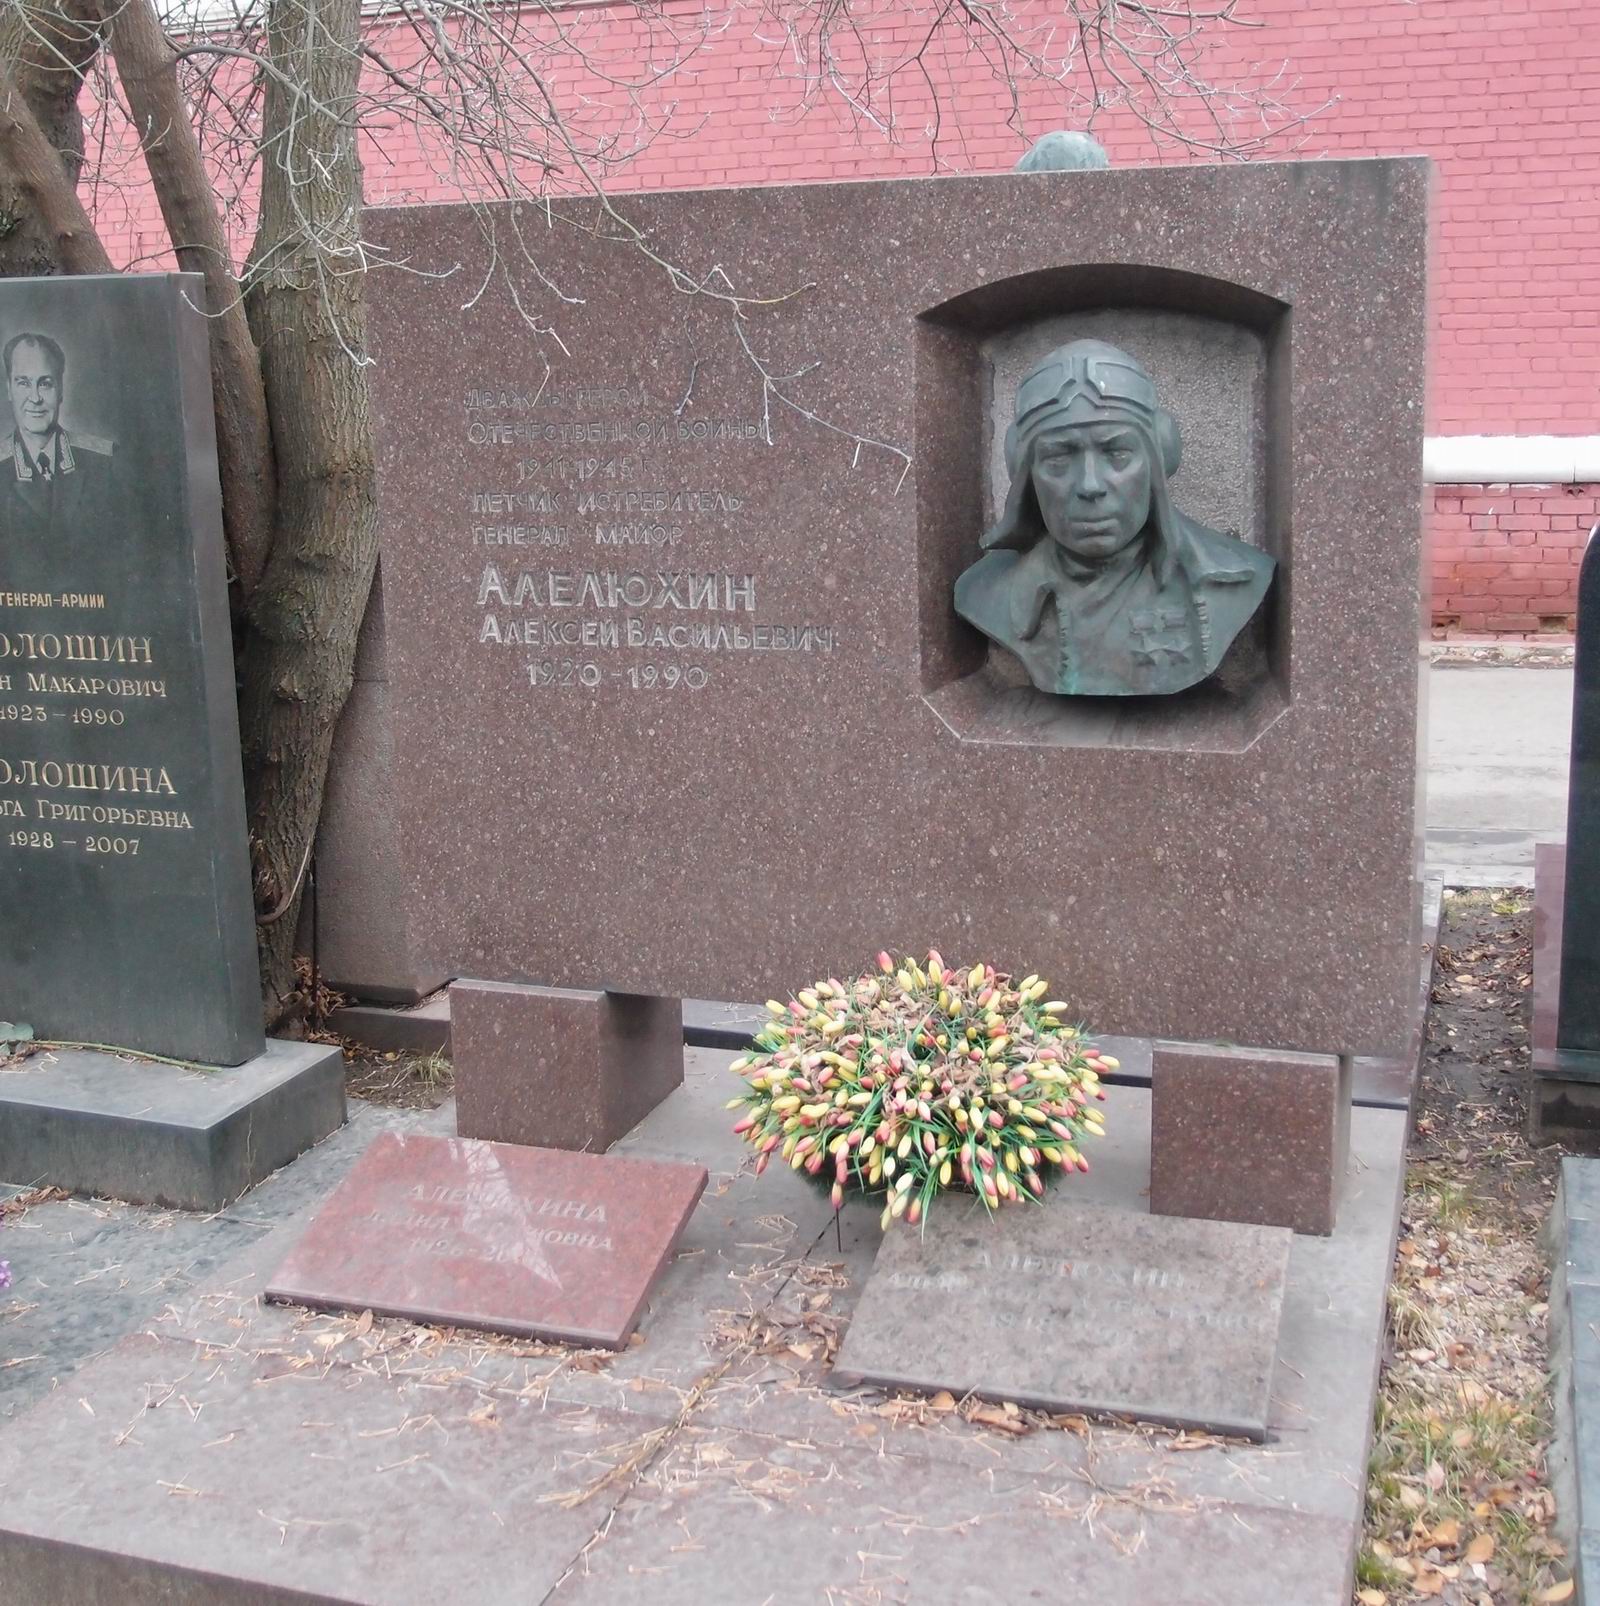 Памятник на могиле Алелюхина А.В. (1920-1990), ск. В.Левин, на Новодевичьем кладбище (11-2-7). Нажмите левую кнопку мыши чтобы увидеть фрагмент памятника.